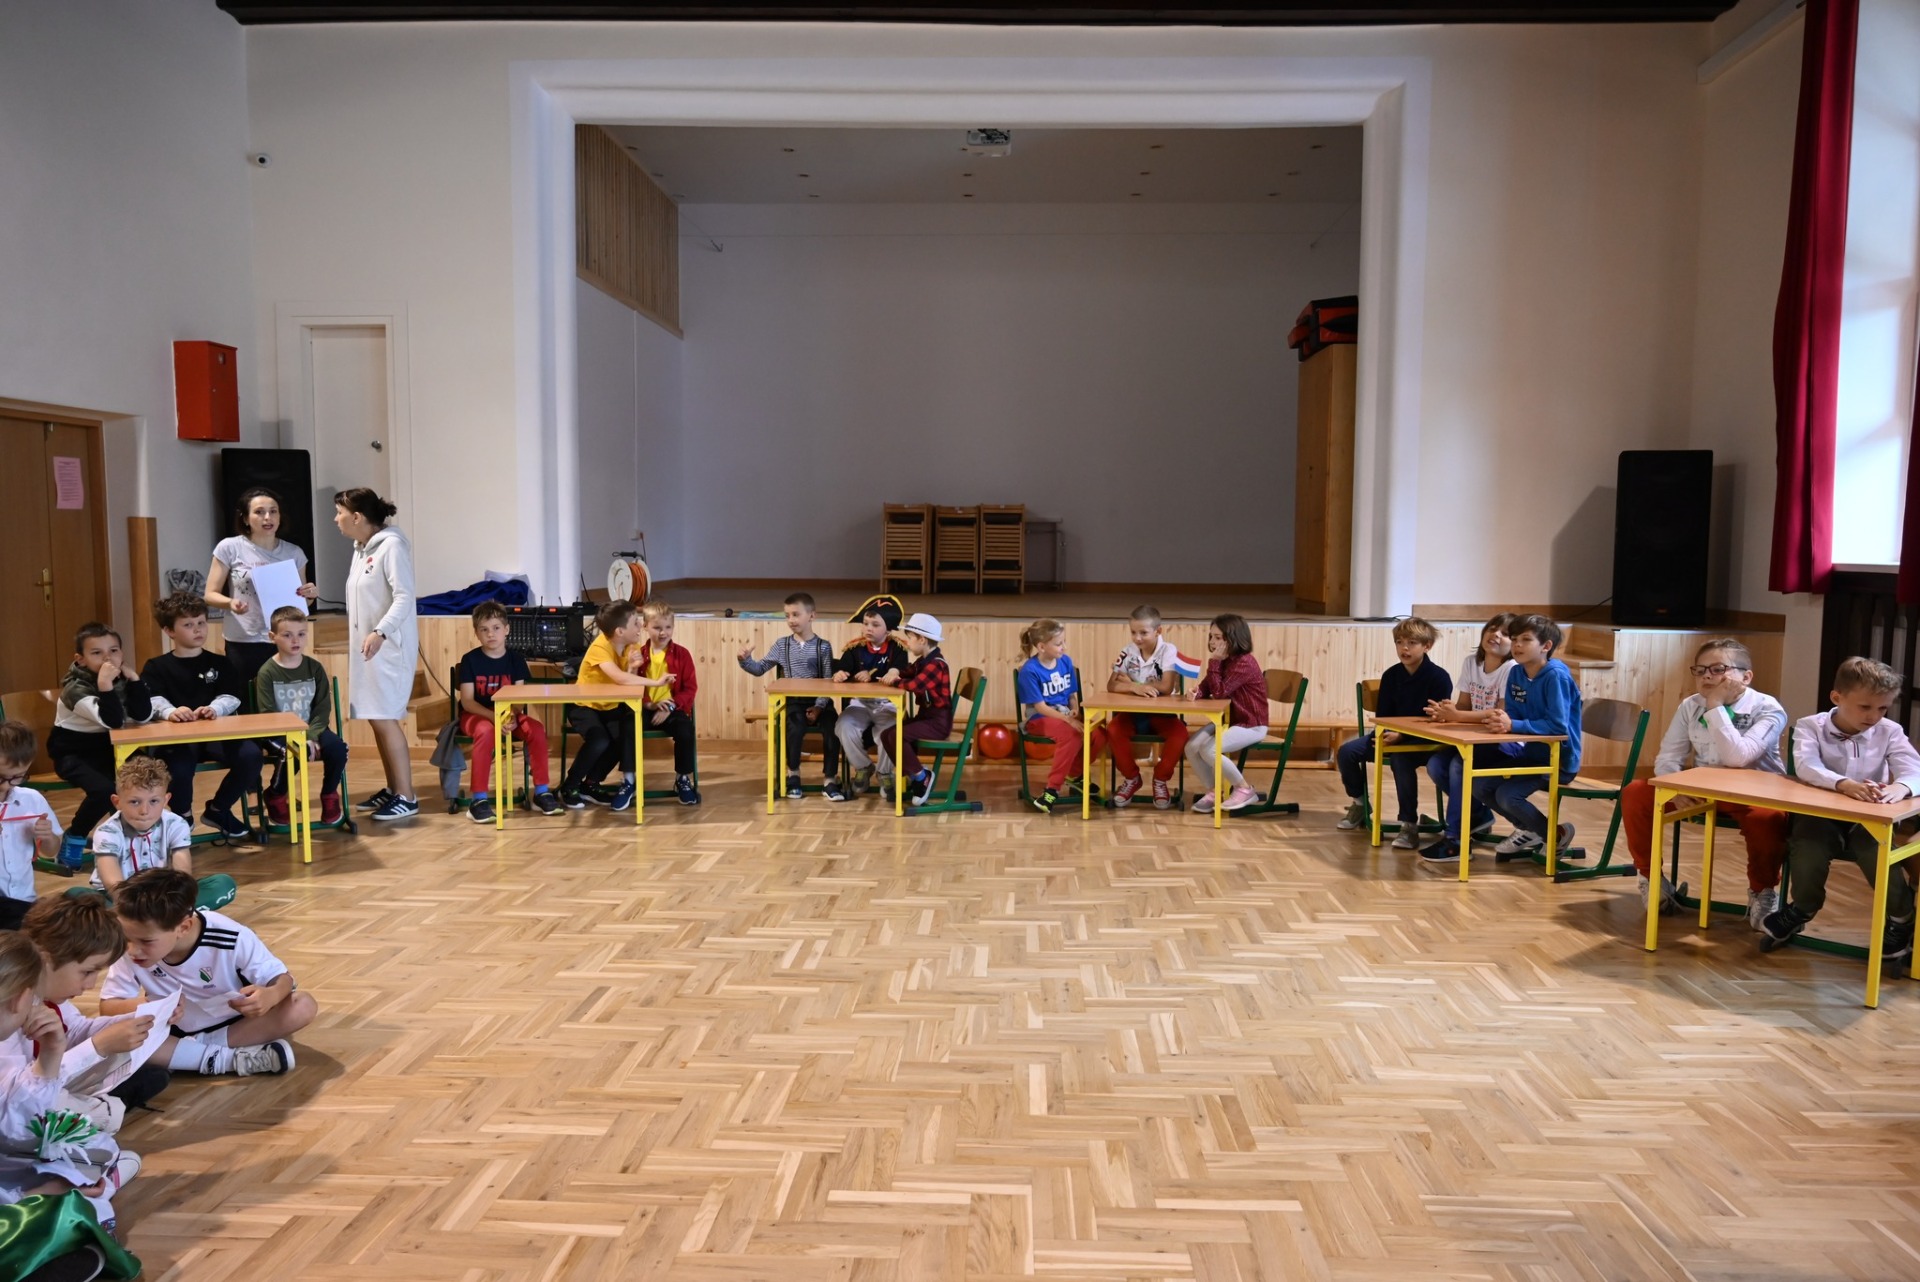 Liczna grupa dzieci siedząca przy stolikach podczas quizu wiedzy w sali gimnastycznej